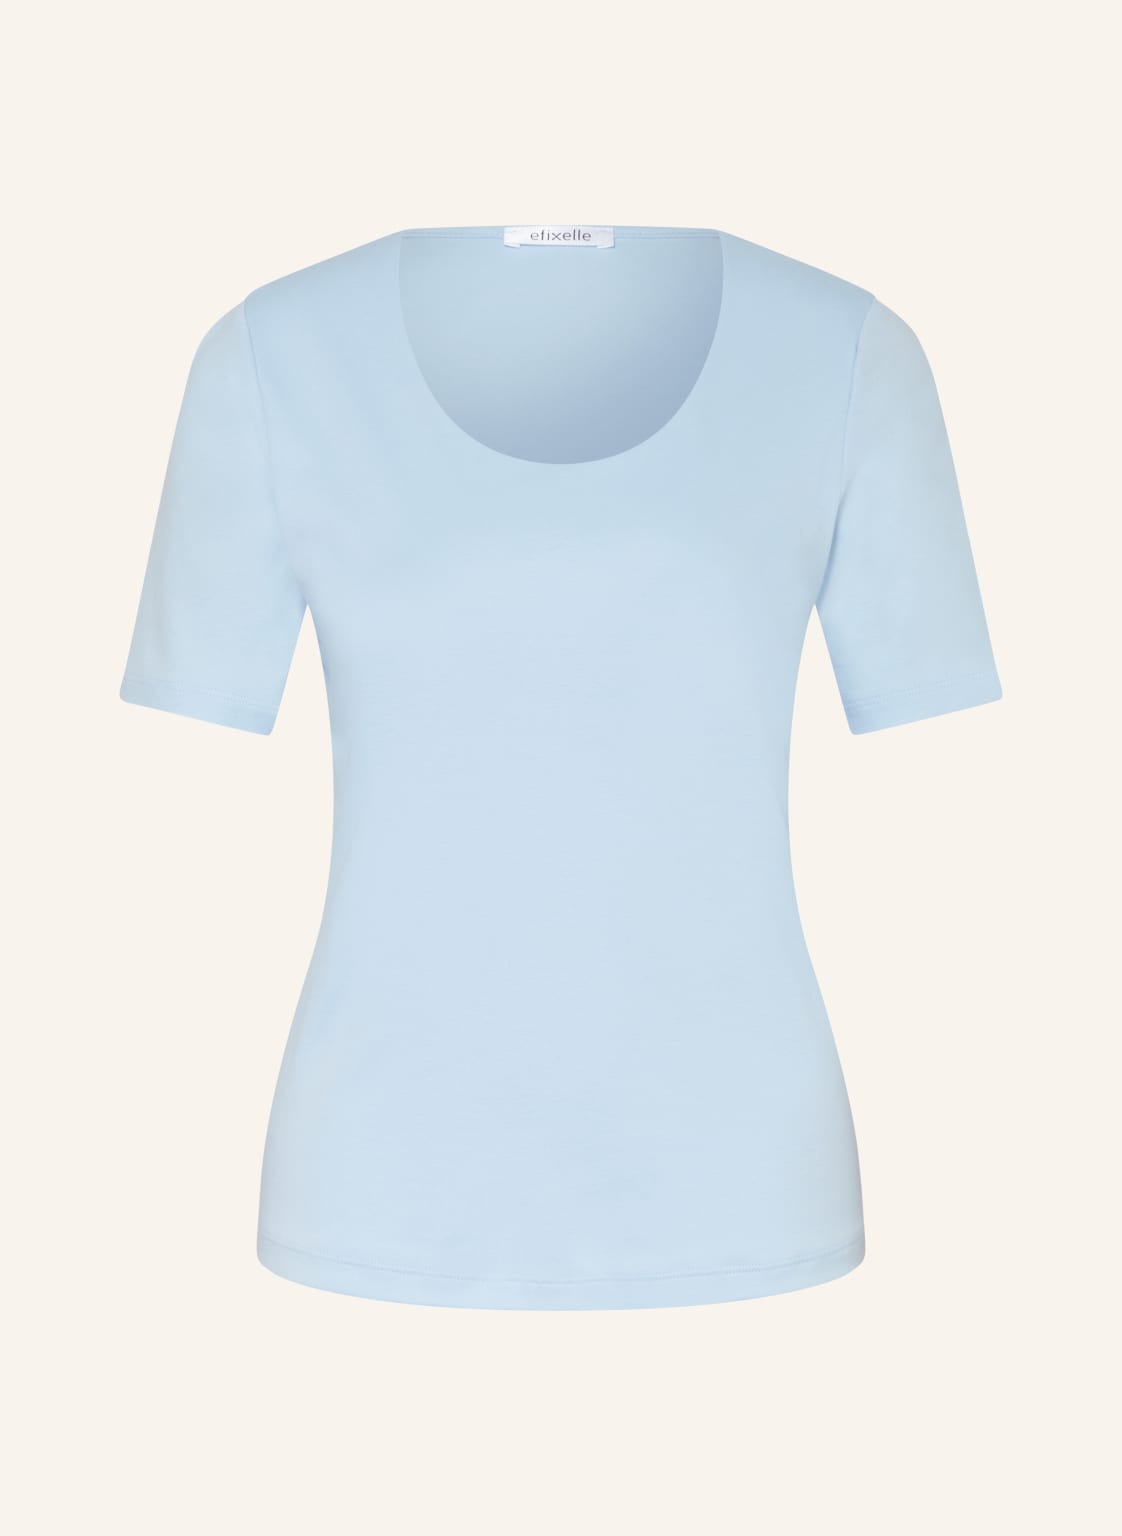 Efixelle T-Shirt blau von efixelle